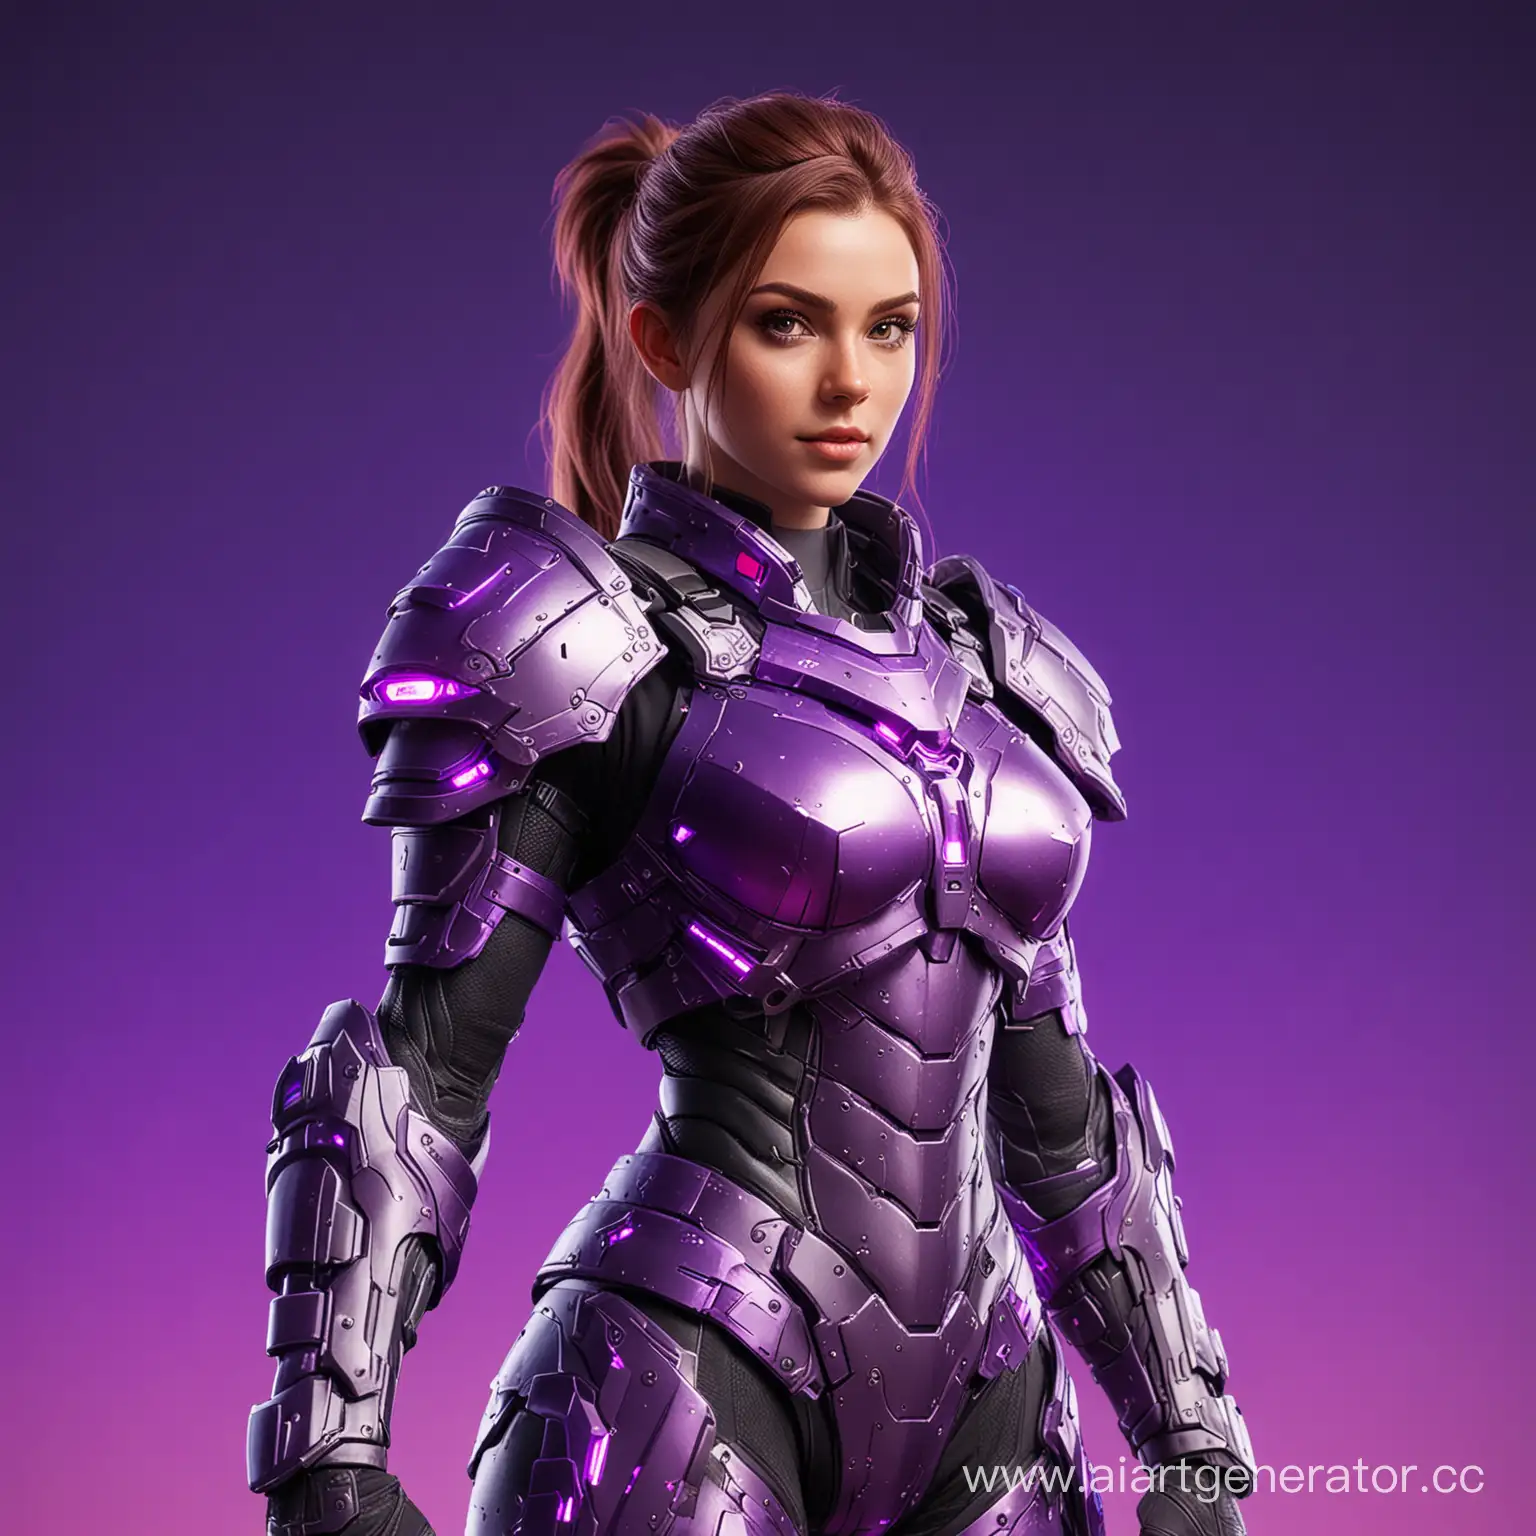 Игровой персонаж в RGB доспехах, сзади фиолетовый красивый фон